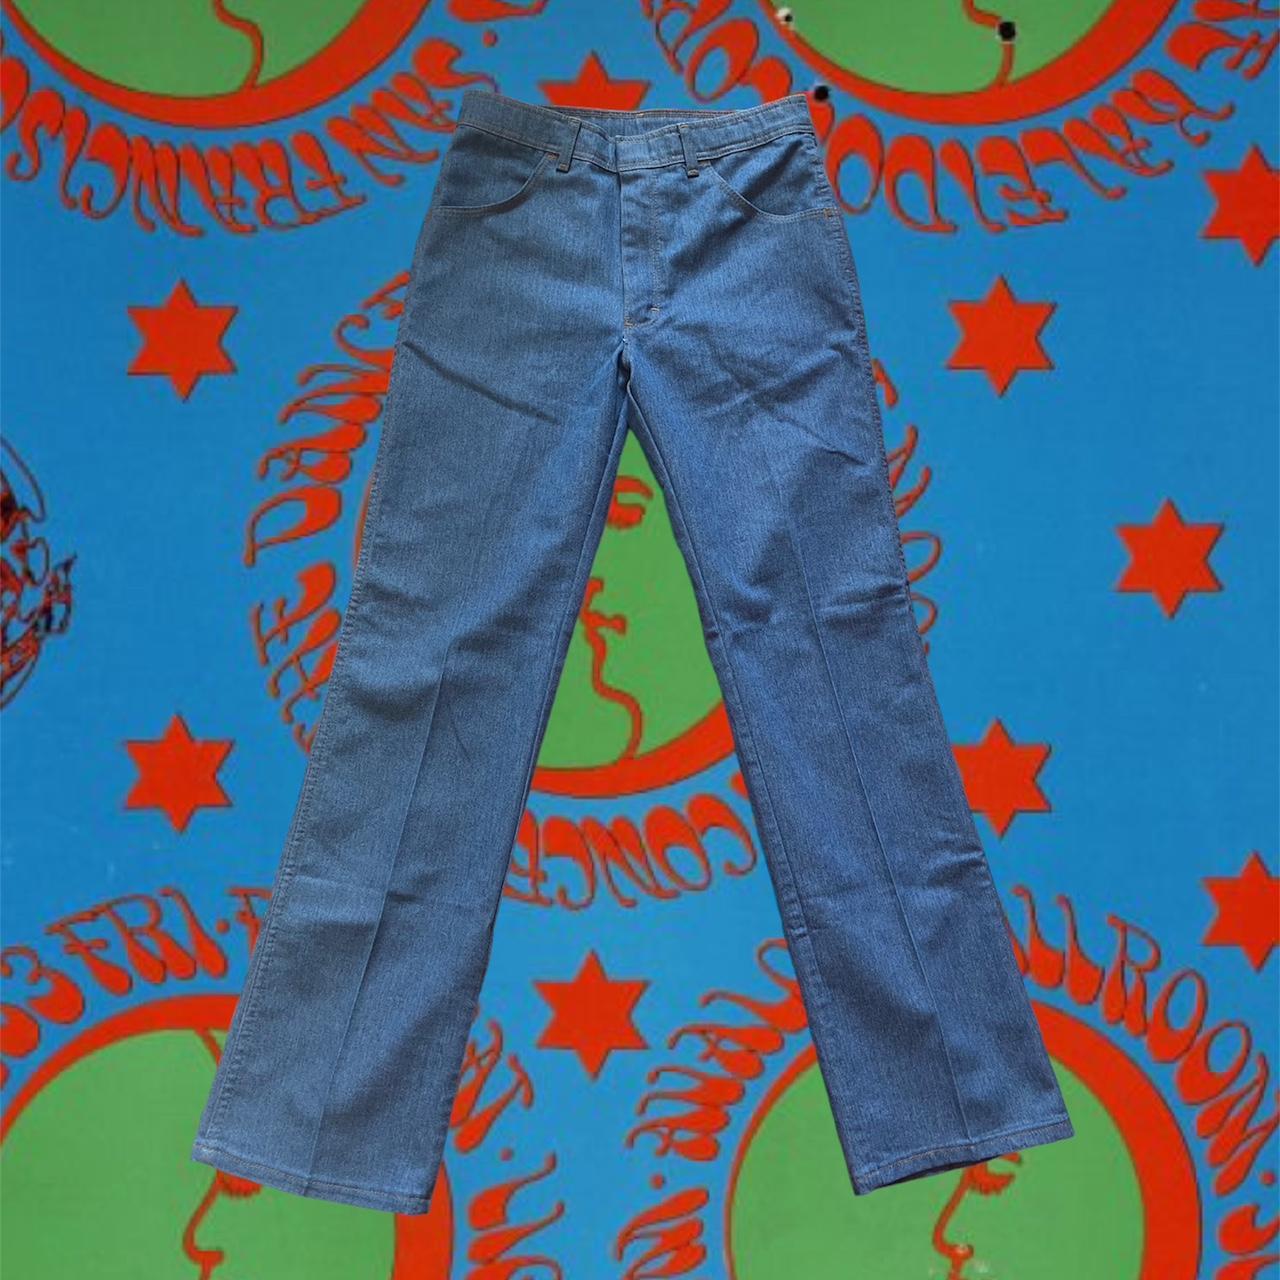 Groovy brushed denim vintage creased jeans 🧿 Size... - Depop